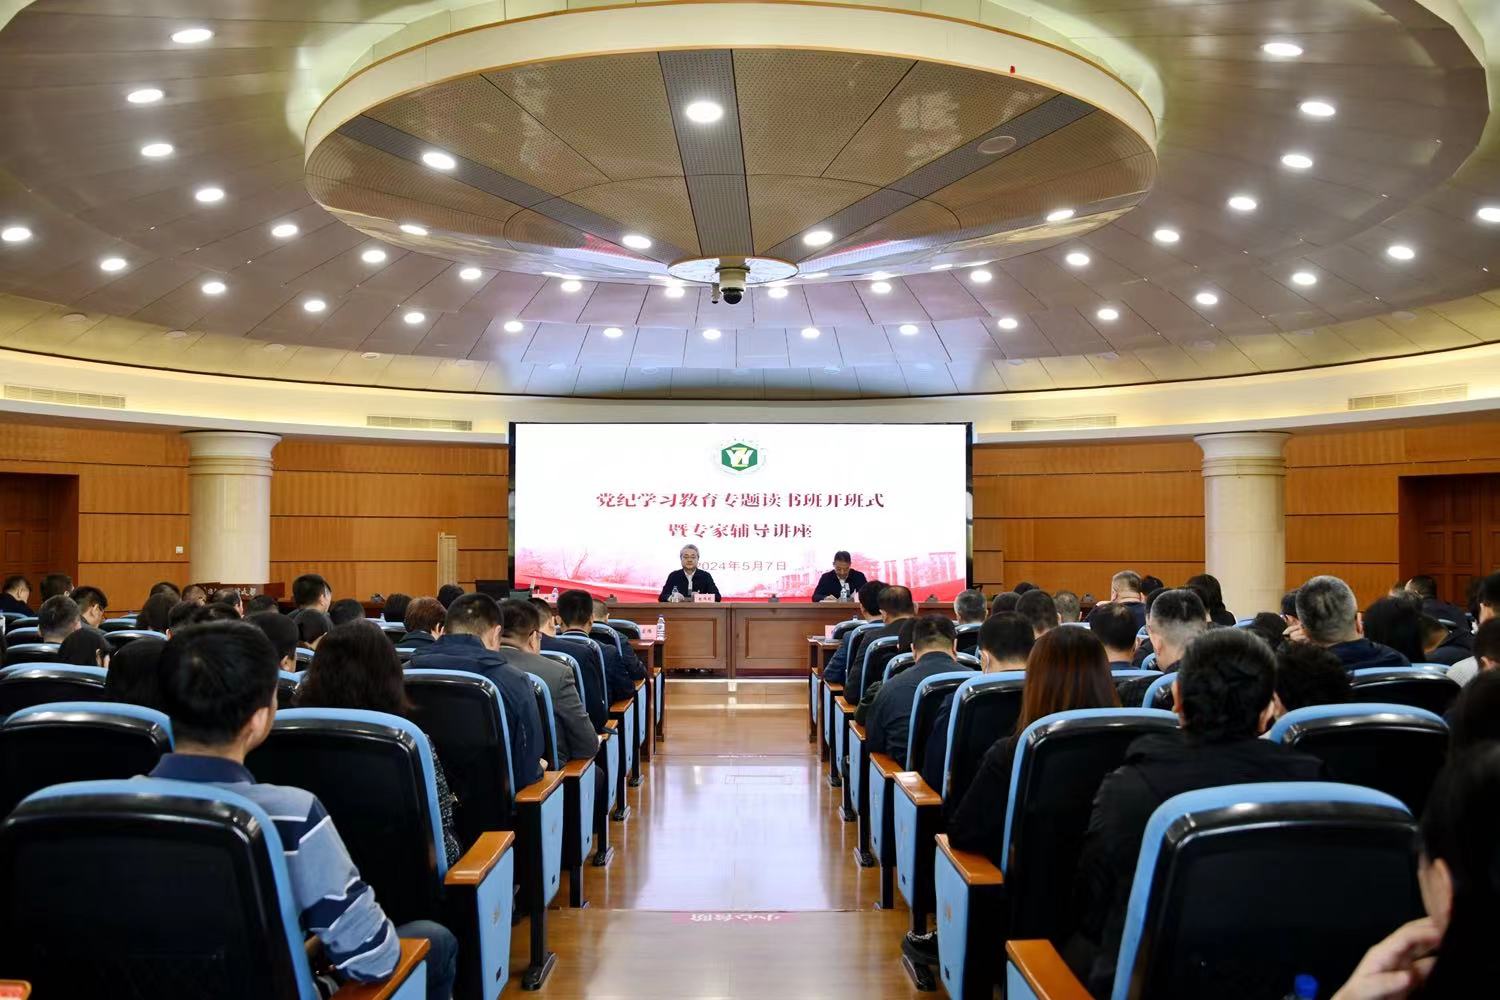 黑龍江中醫藥大學舉辦黨紀學習教育專題讀書班